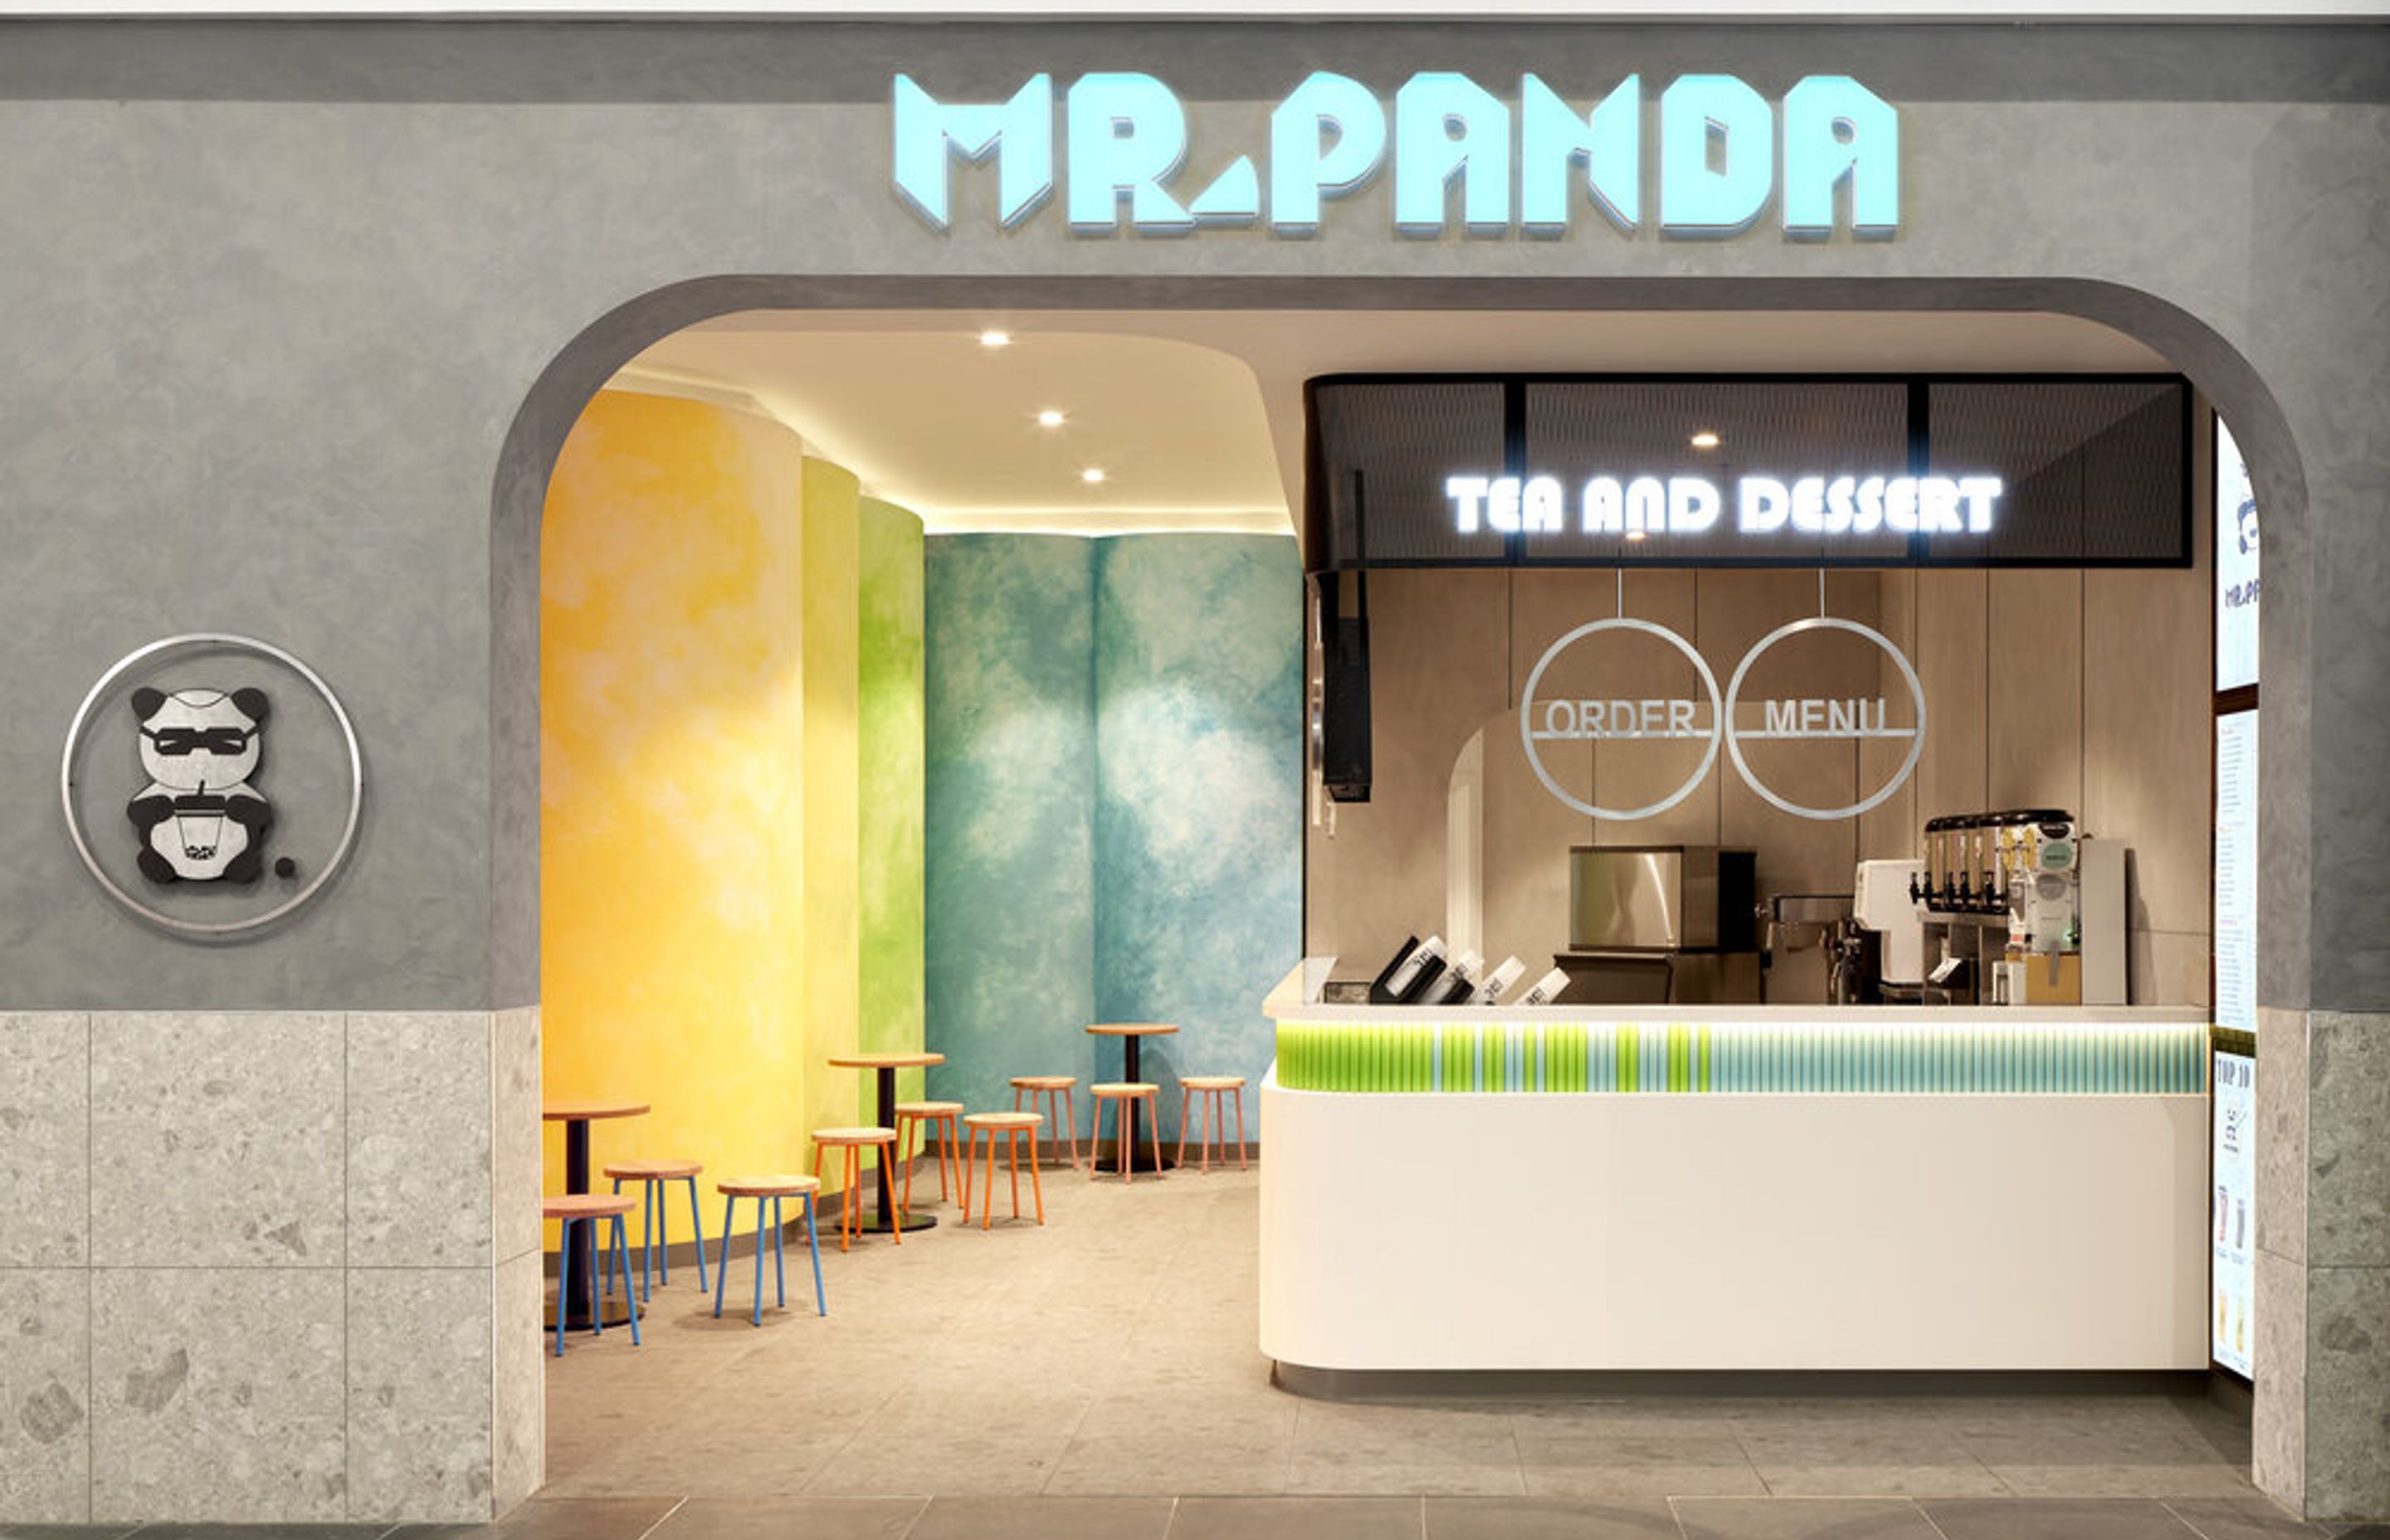 MR PANDA BUBBLE TEA BAR